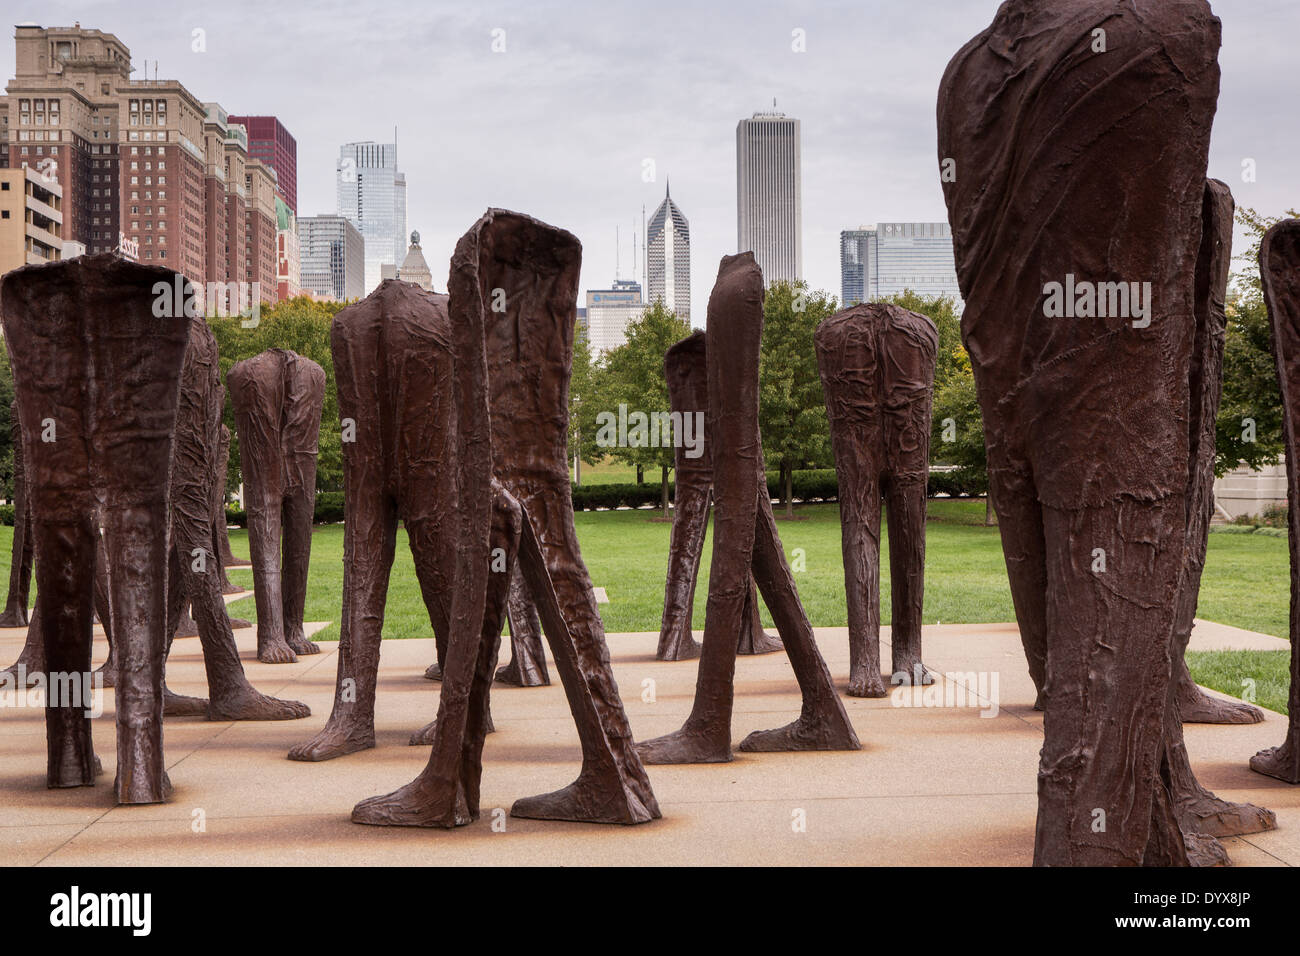 Agora è un gruppo di 106 Decapitati e senza braccioli sculture in ferro dall'artista polacco Magdalena Abakanowicz, di Grant Park di Chicago, Illinois USA Foto Stock